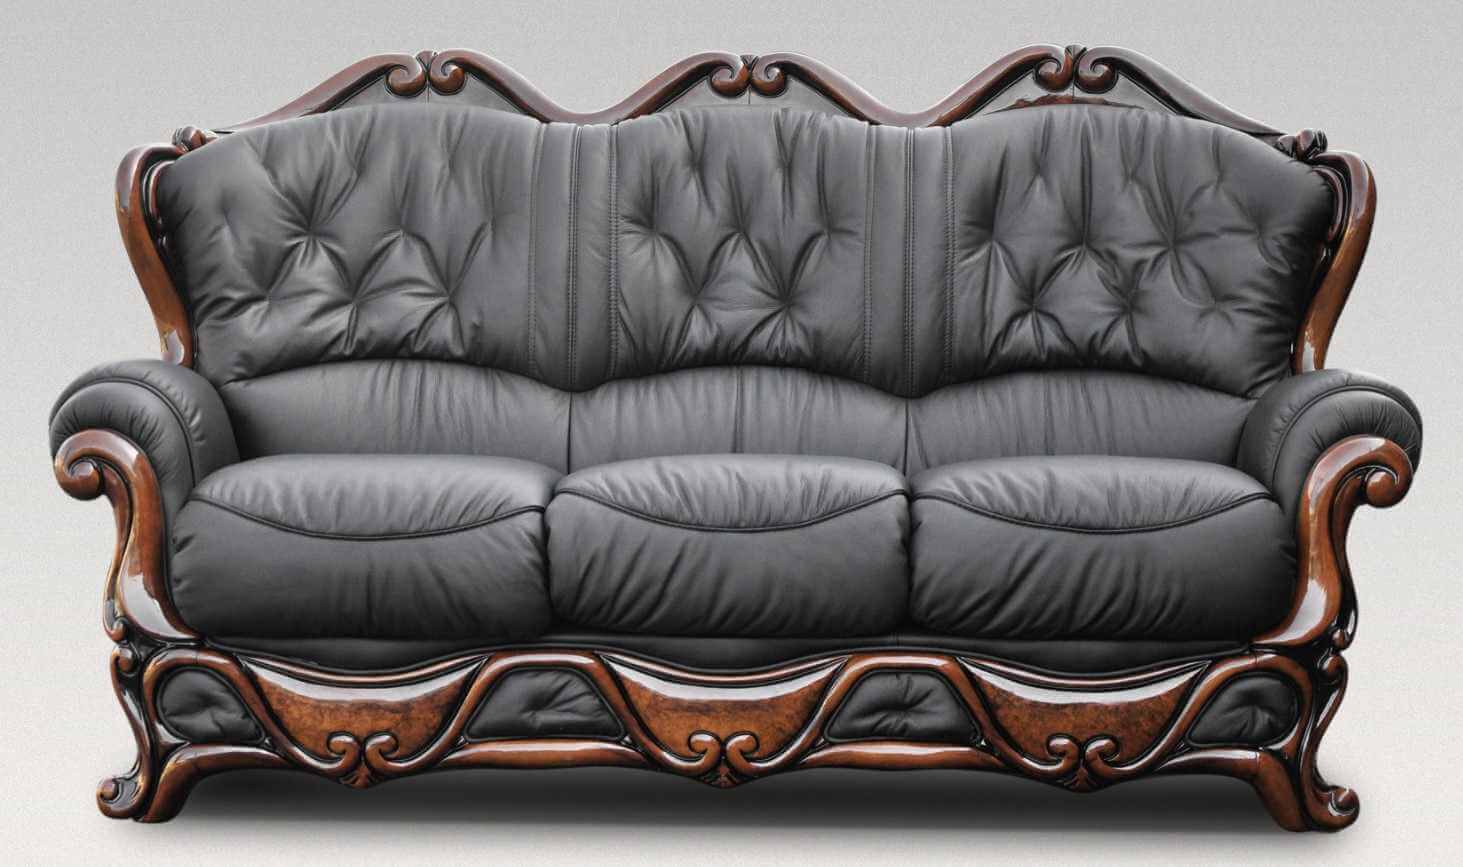 Illinois 3 Seater Italian Leather Sofa, Black Italian Leather Sofa